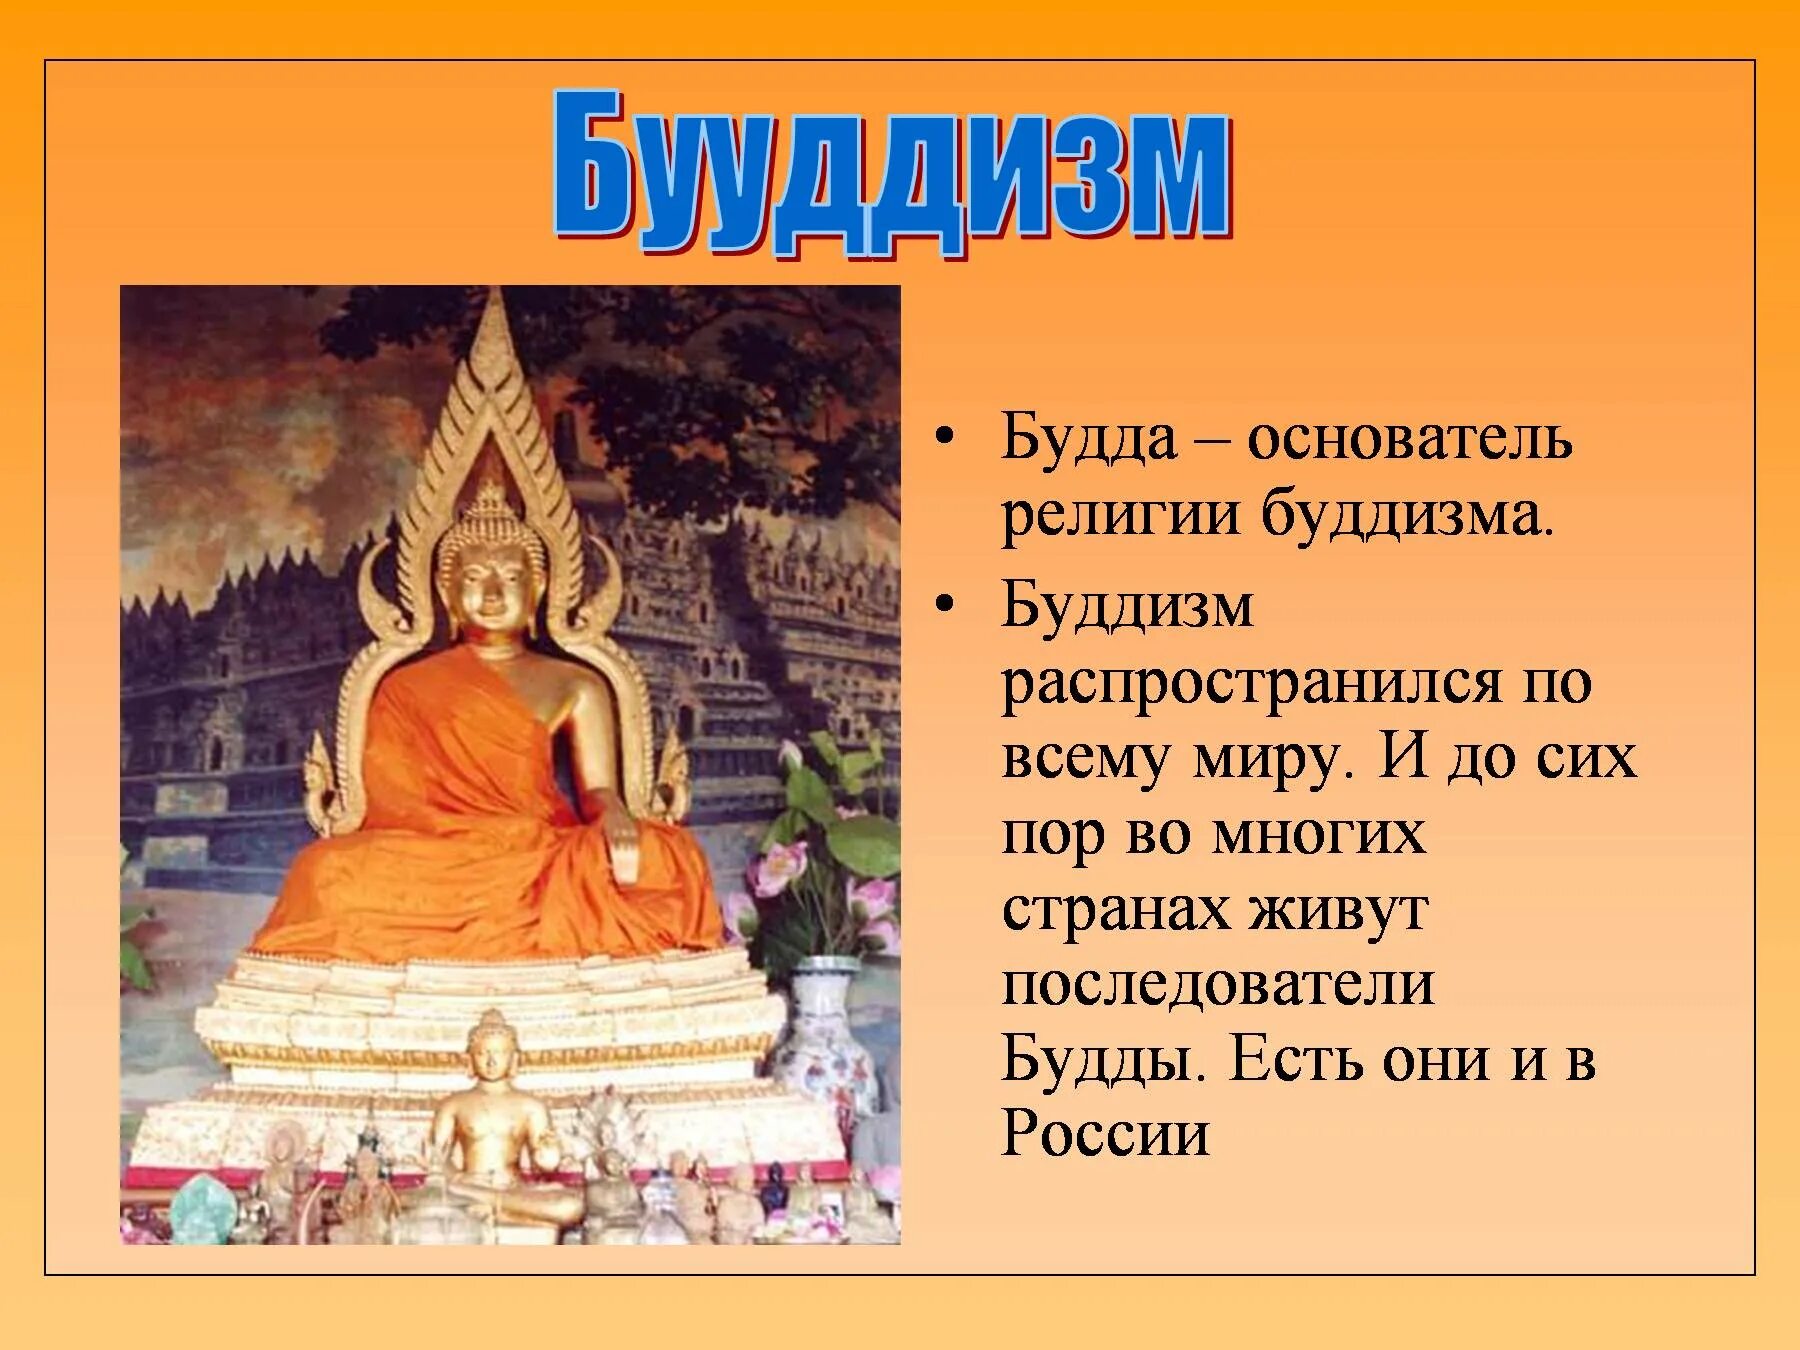 Будда основатель религии буддизма. Будда в древней Индии основатель. Основатель религии Будда 5 класс. Будда Шакьямуни древнее изображение. Буддизм относится к древней индии